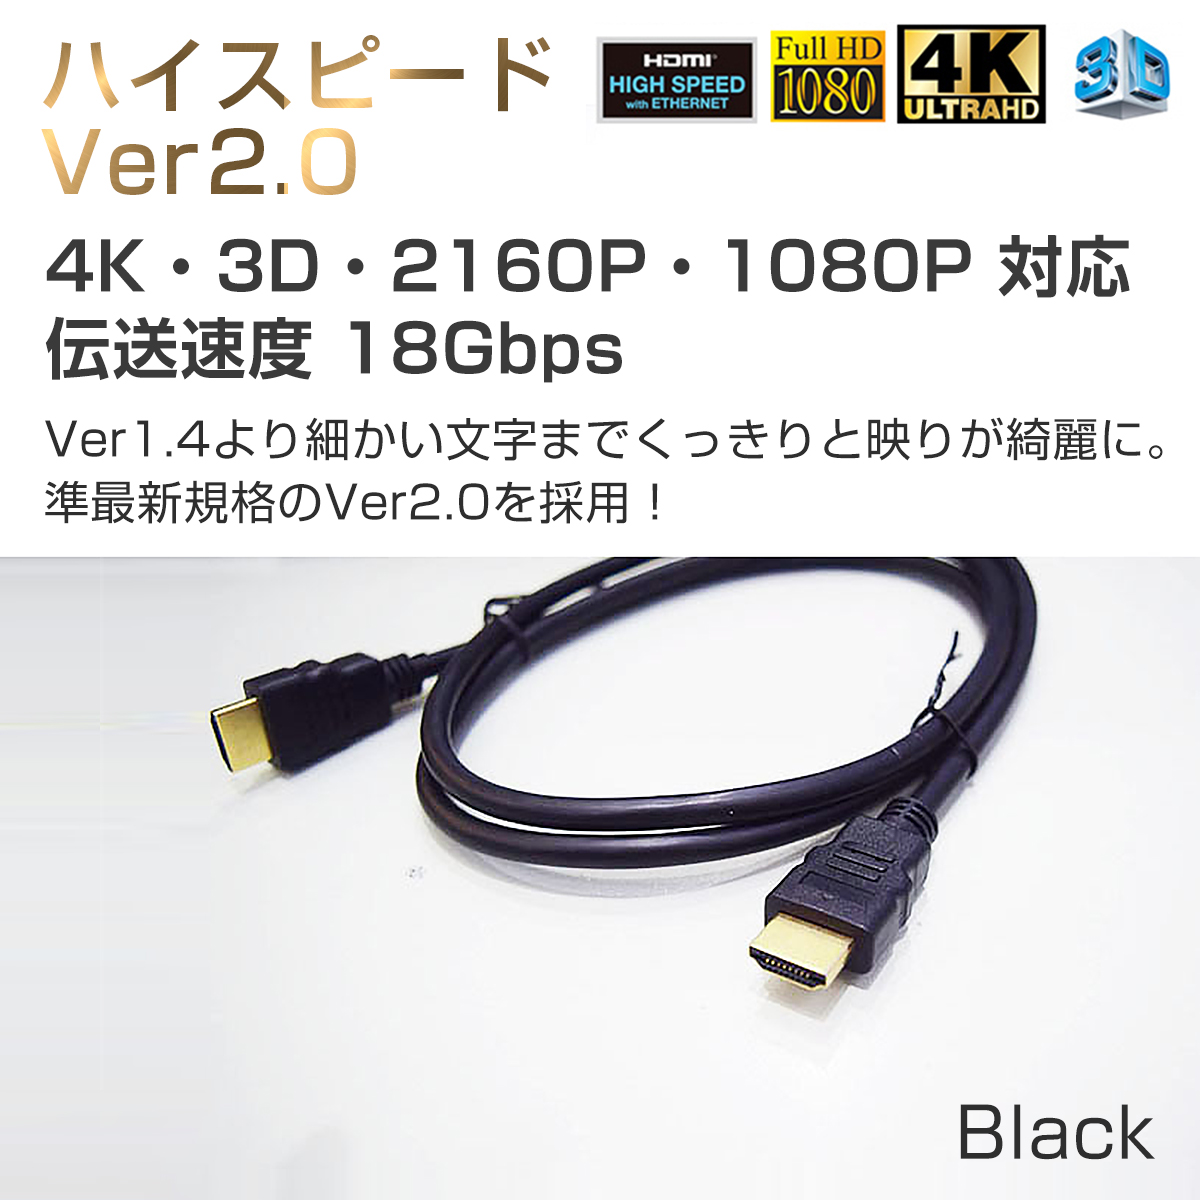 HDMIケーブル1.5m 2本セット ハイスピード 3D 対応 Ver2.0 4K/60p UltraHD HDR FHD HEC ARC タイプAオス -タイプAオス 黒 SDM便送料無料 1ヶ月保証：[KMサービス]